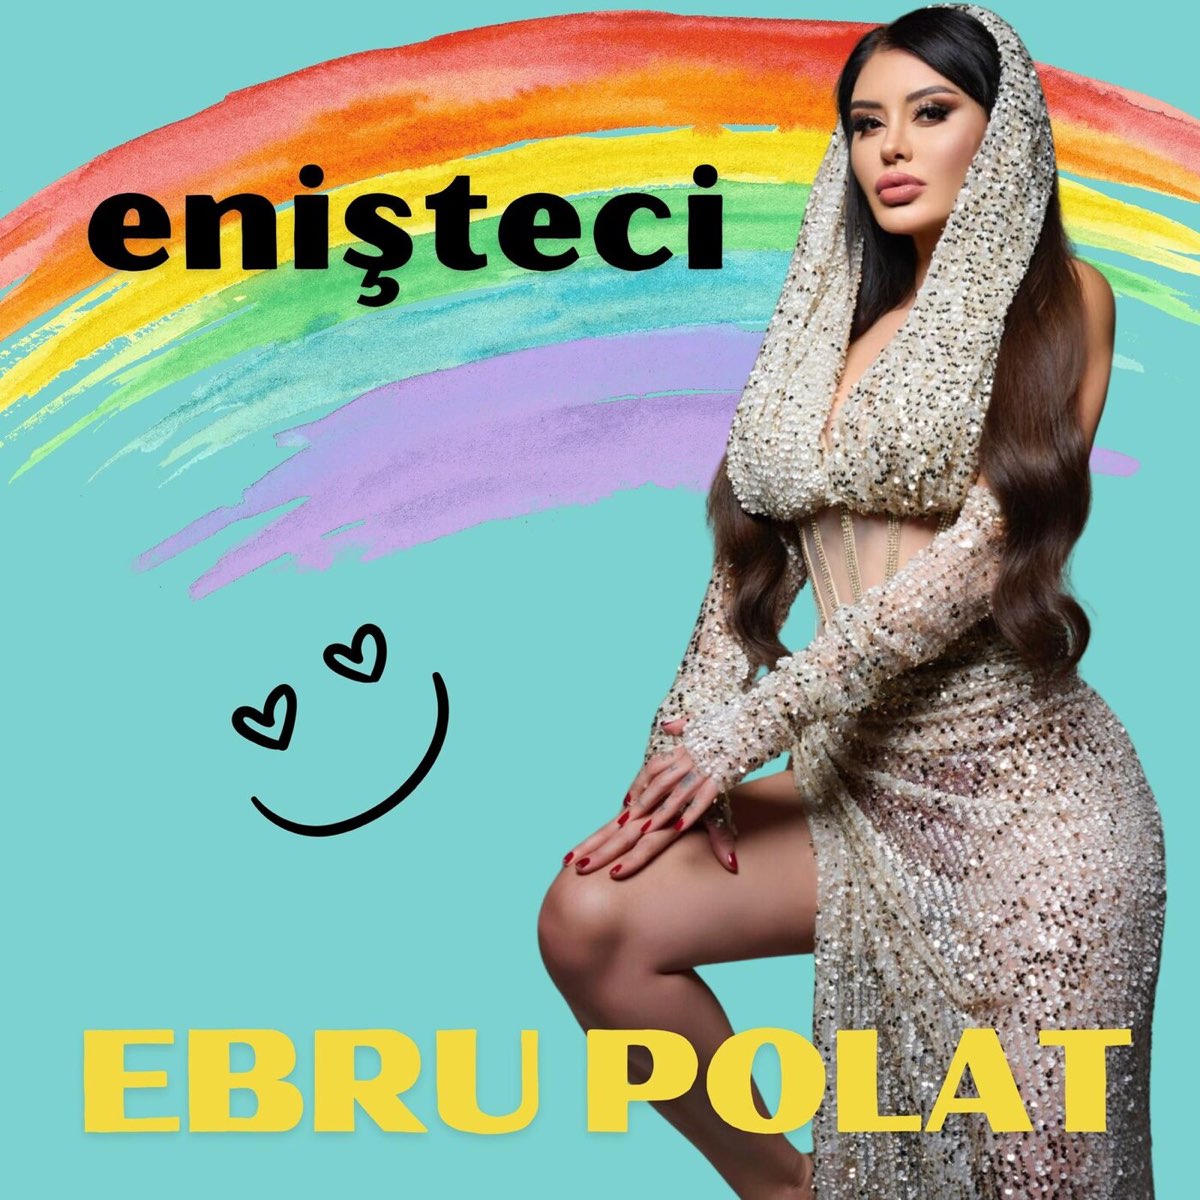 دانلود آهنگ جدید Ebru Polat به نام Enişteci